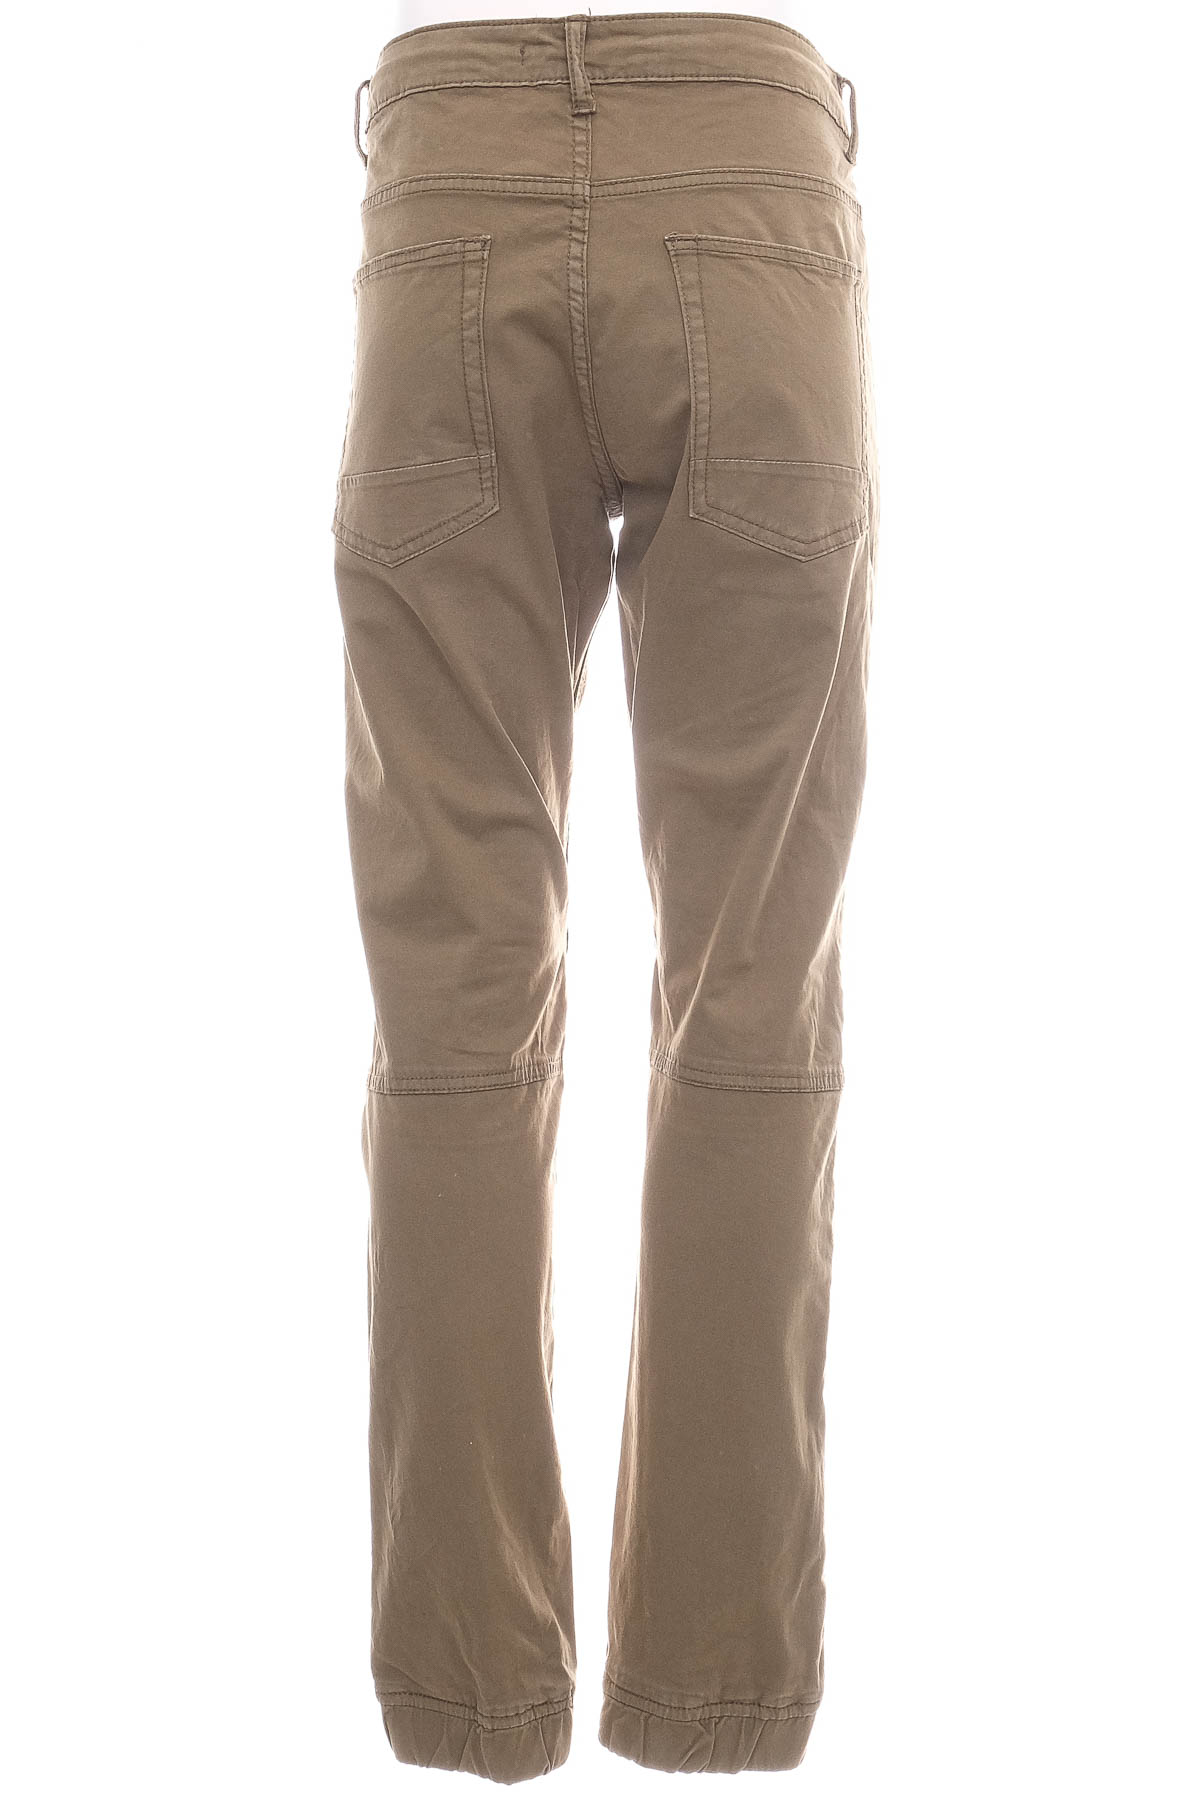 Men's trousers - FSBN - 1